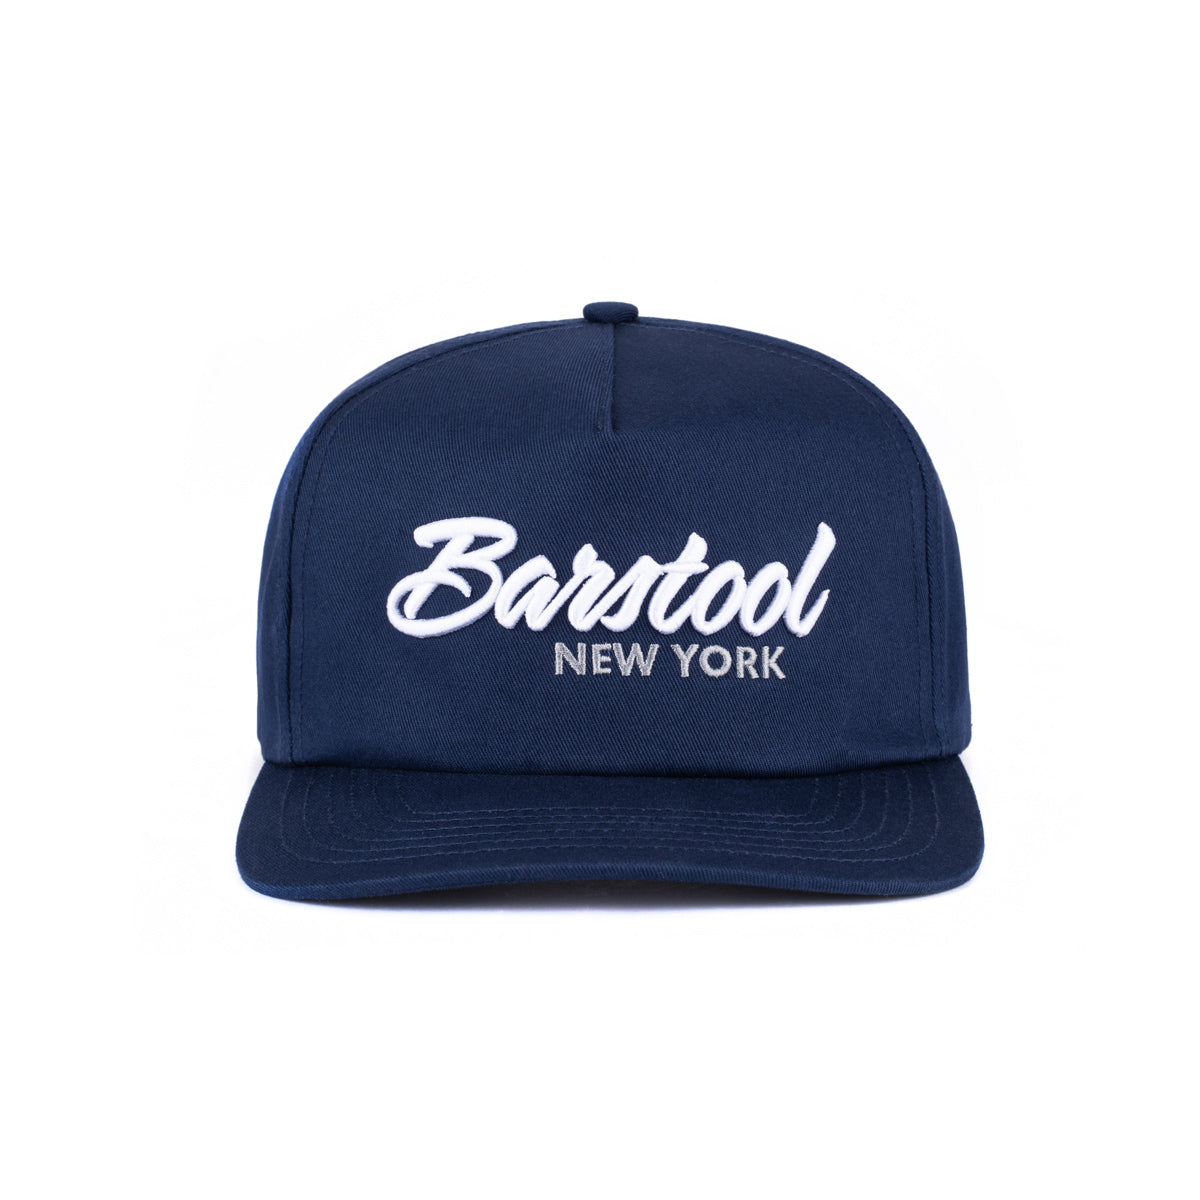 Barstool NY Retro Snapback Hat-Hats-Barstool Sports-Navy-One Size-Barstool Sports